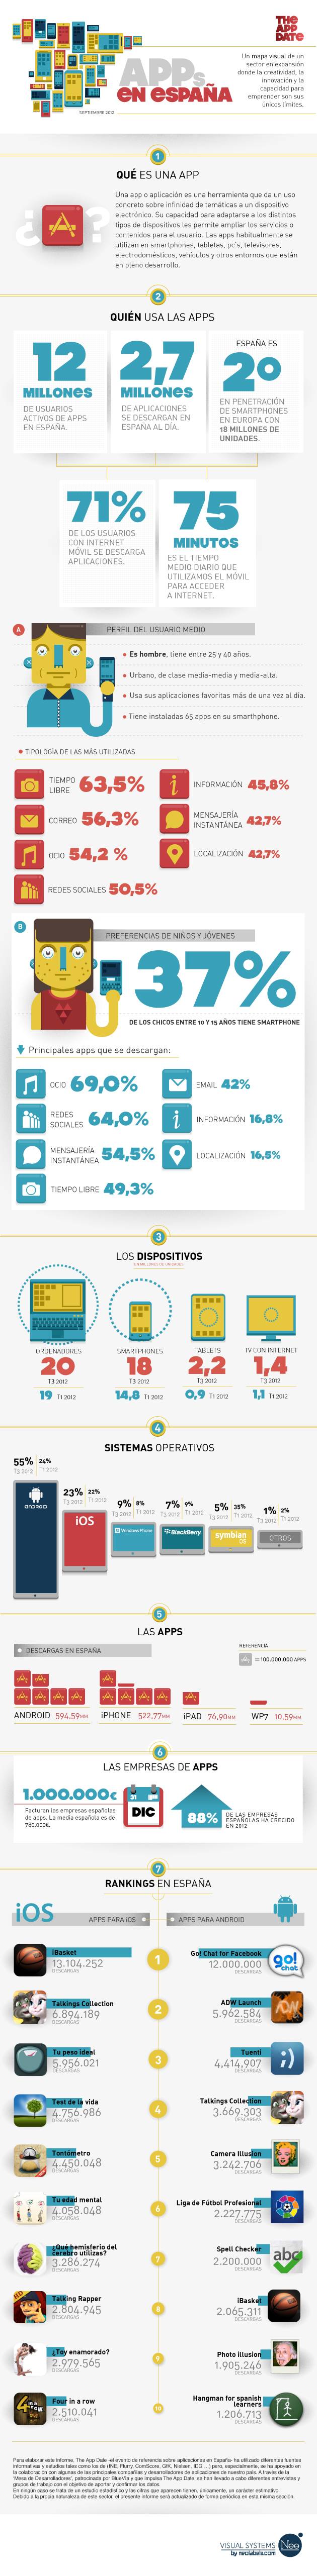 Estudio sobre Apps Móviles en España según Neolabels y The Appdate (infografía)